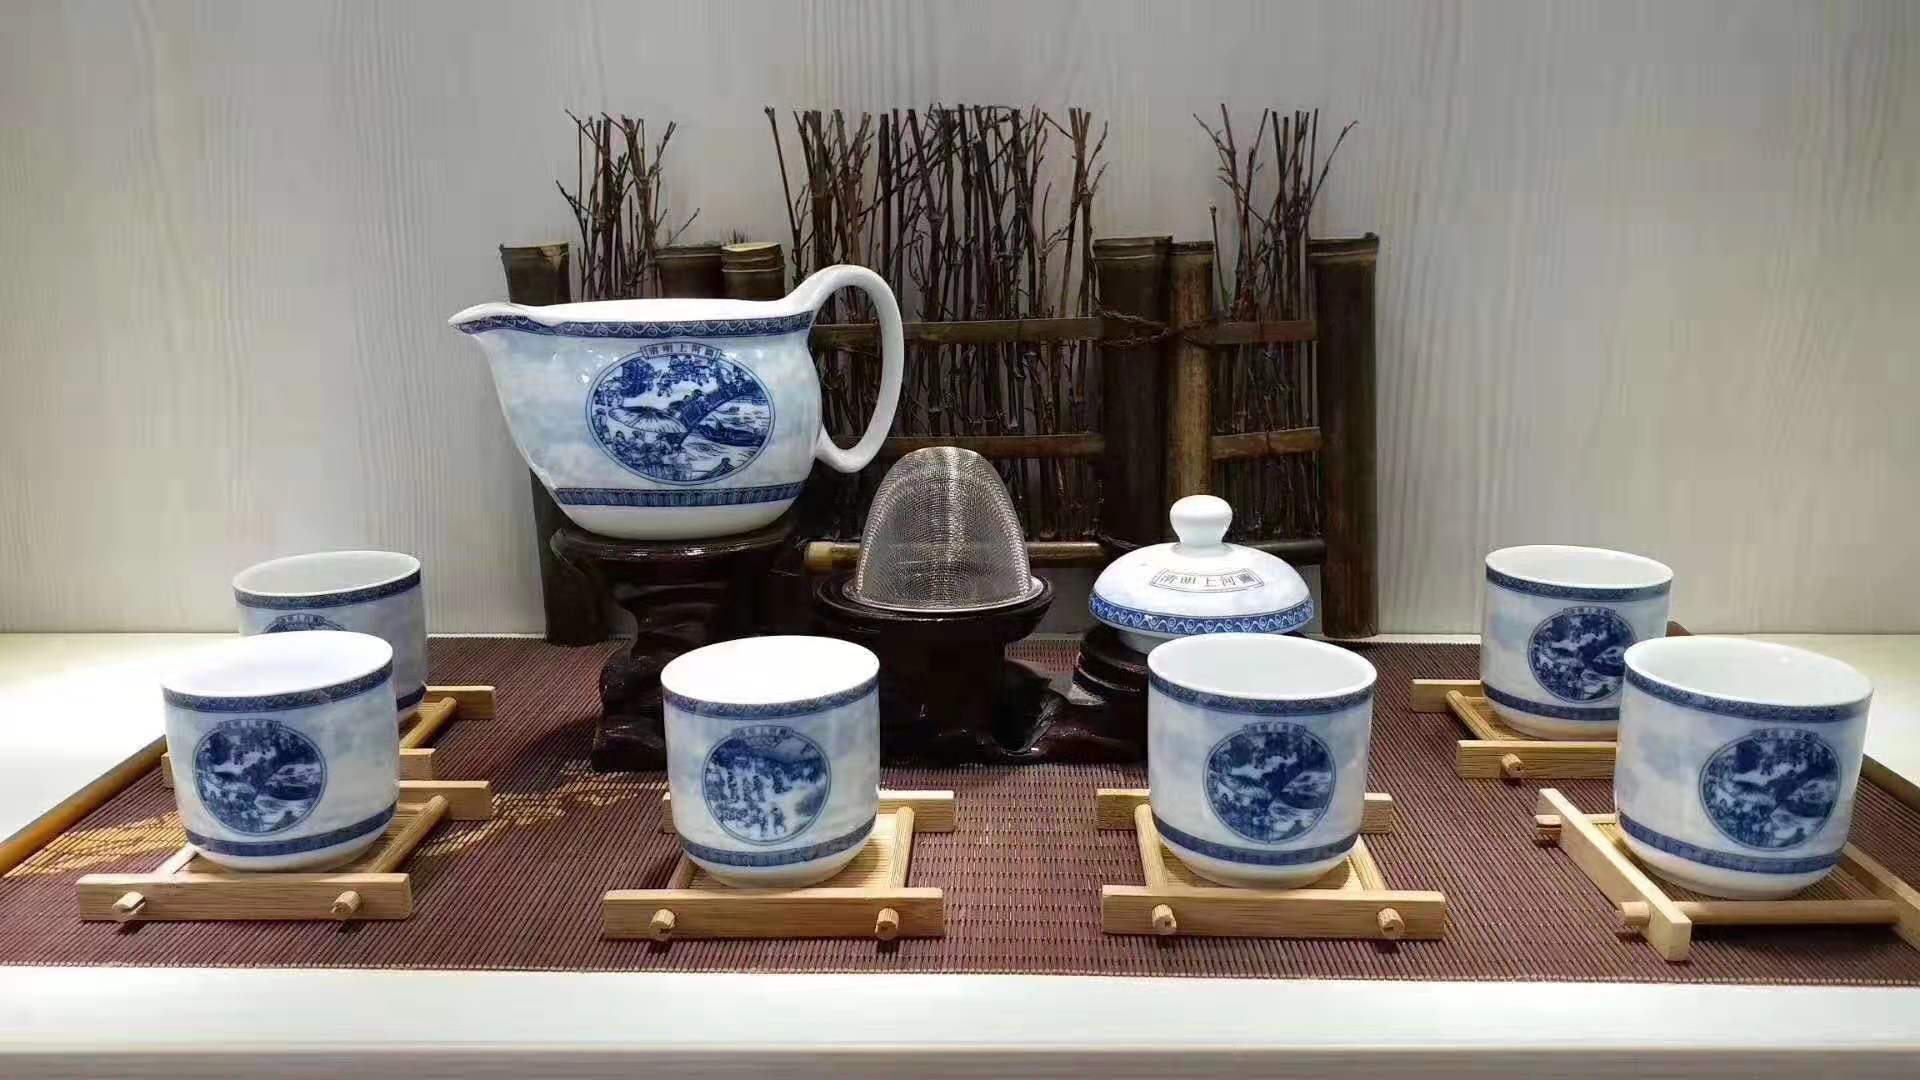 陶瓷茶具礼盒套装 逢年过节雕刻茶杯礼品装 7头印花陶瓷茶具 陶瓷套装定制logo